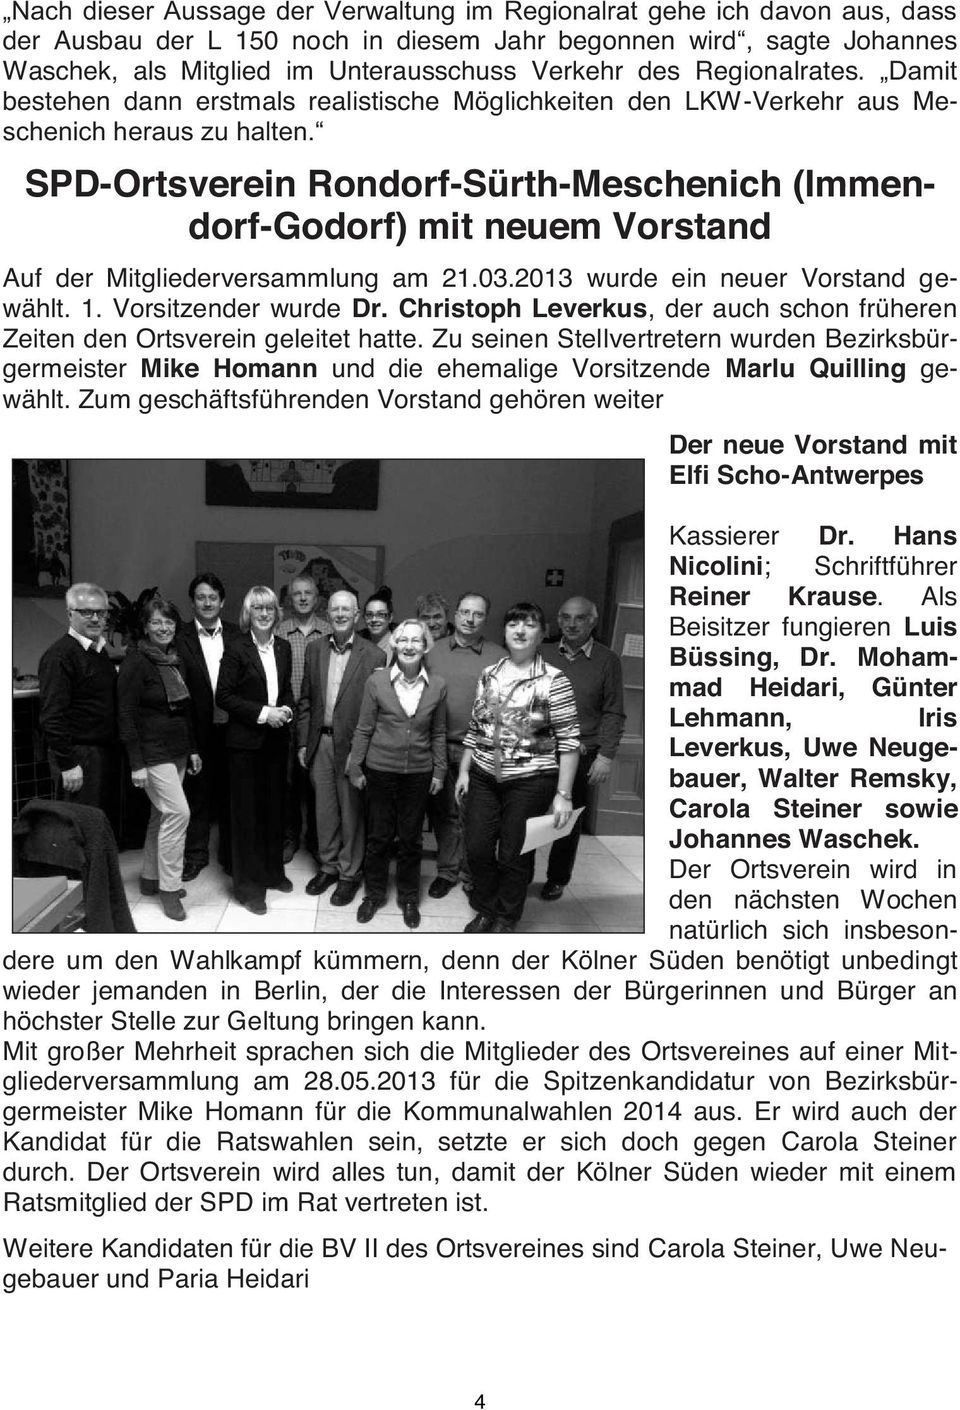 SPD-Ortsverein Rondorf-Sürth-Meschenich (Immendorf-Godorf) mit neuem Vorstand Auf der Mitgliederversammlung am 21.03.2013 wurde ein neuer Vorstand gewählt. 1. Vorsitzender wurde Dr.